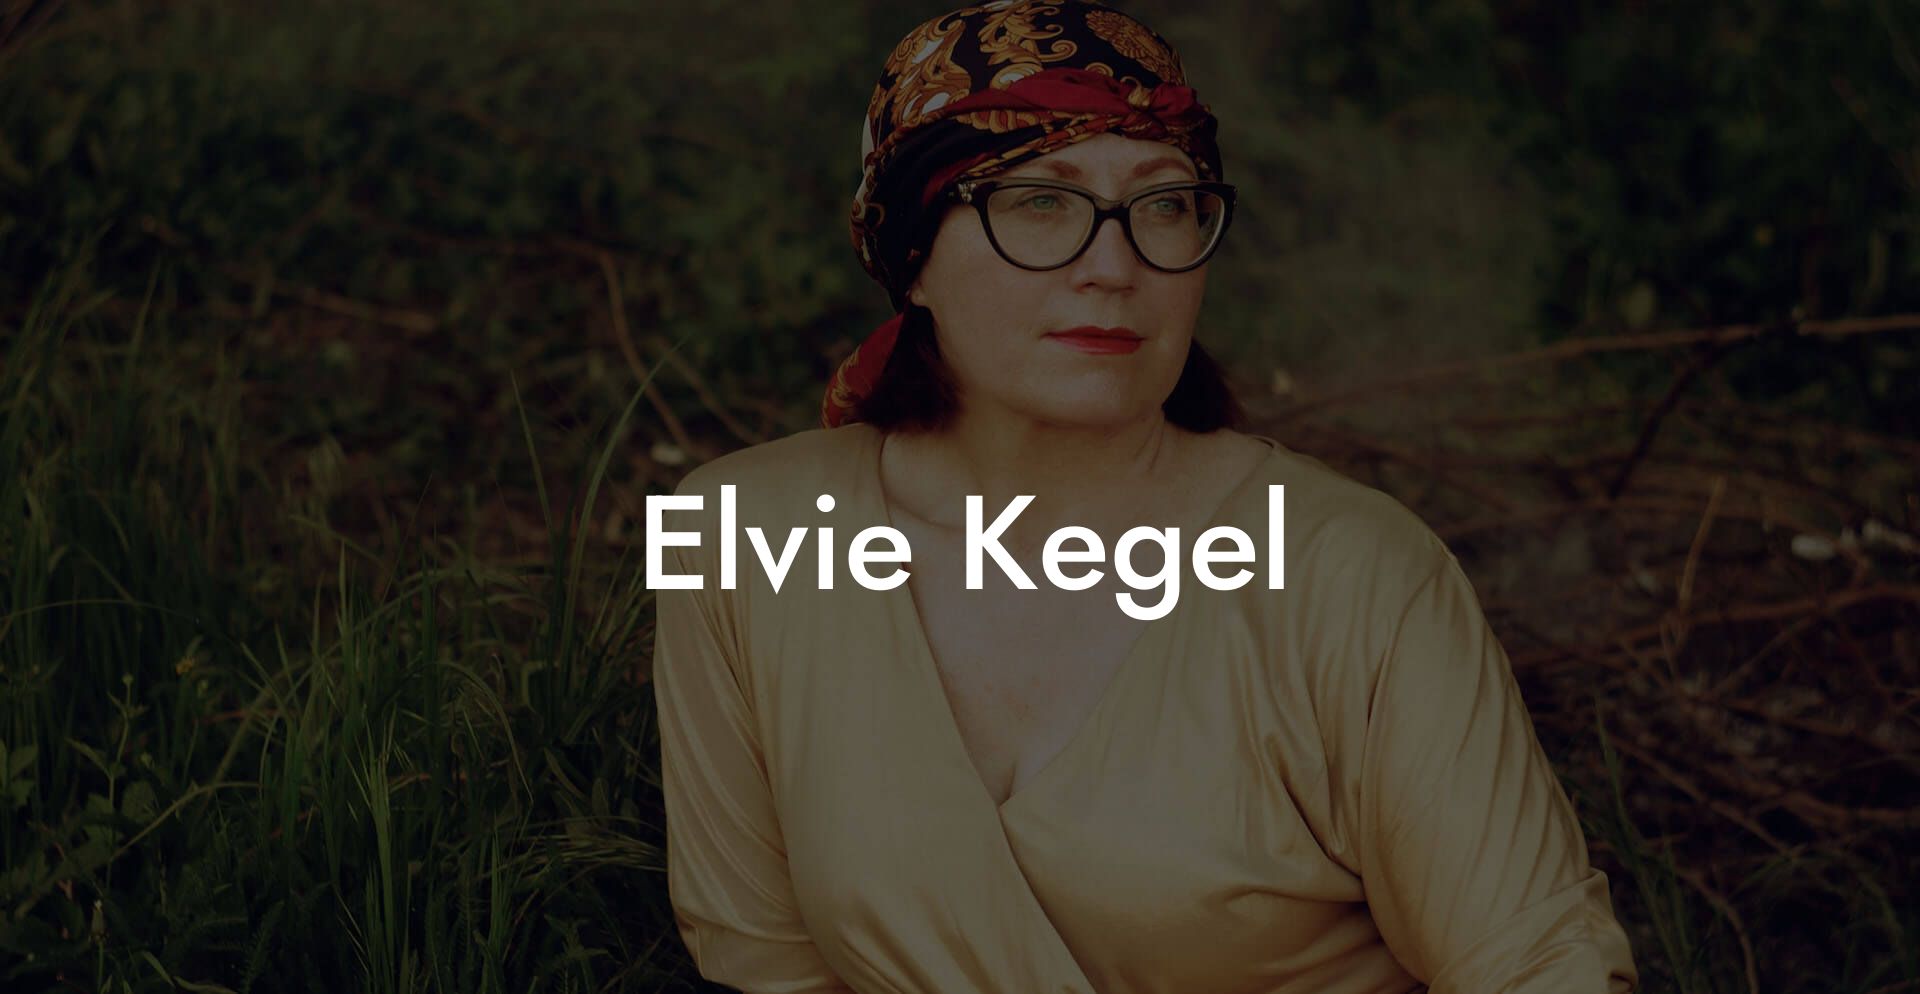 Elvie Kegel